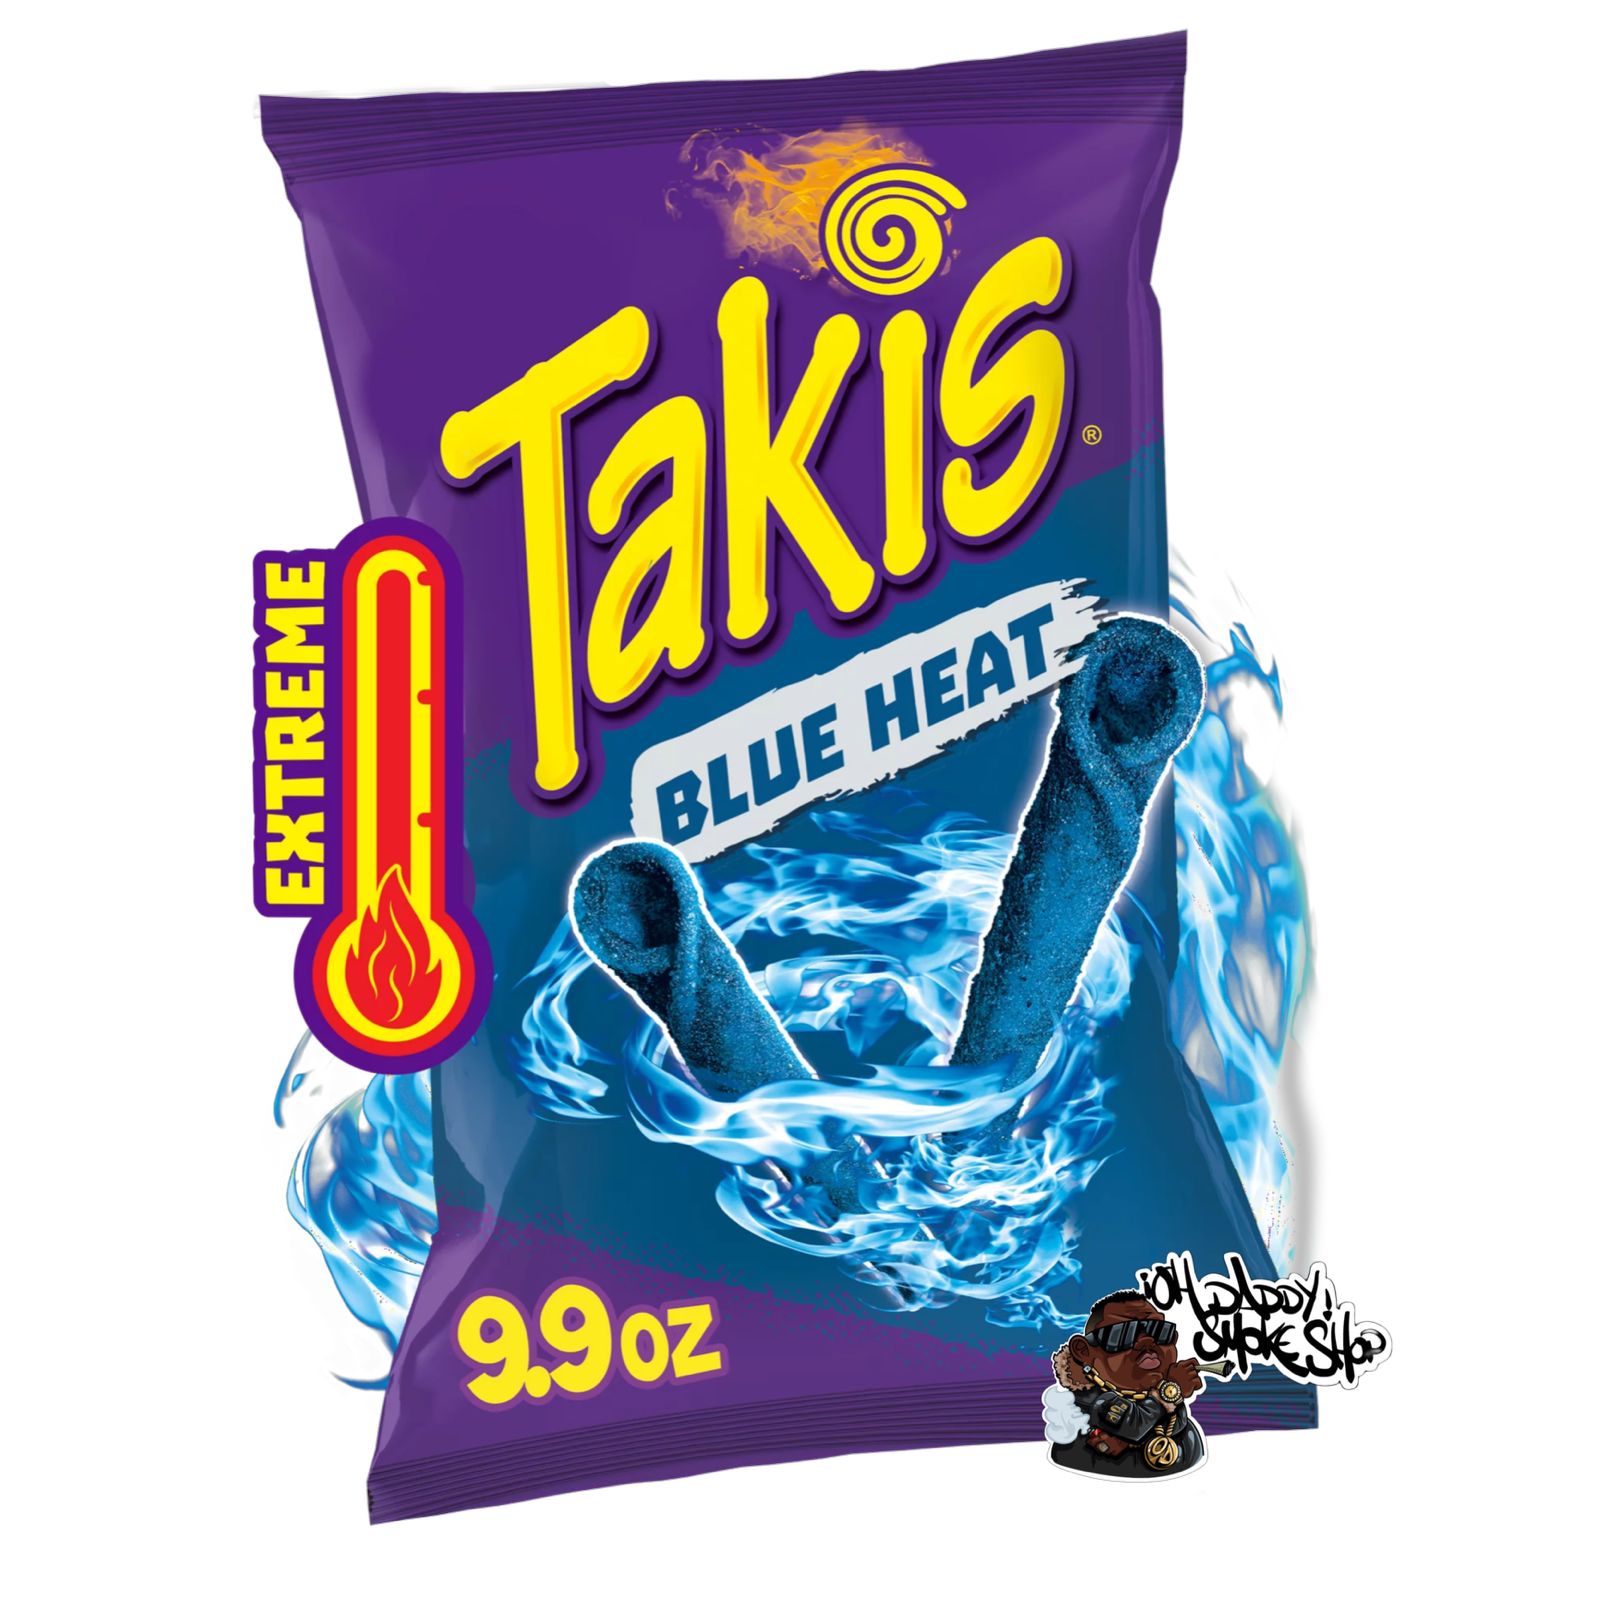 Takis Blue Heat 9.9 oz US